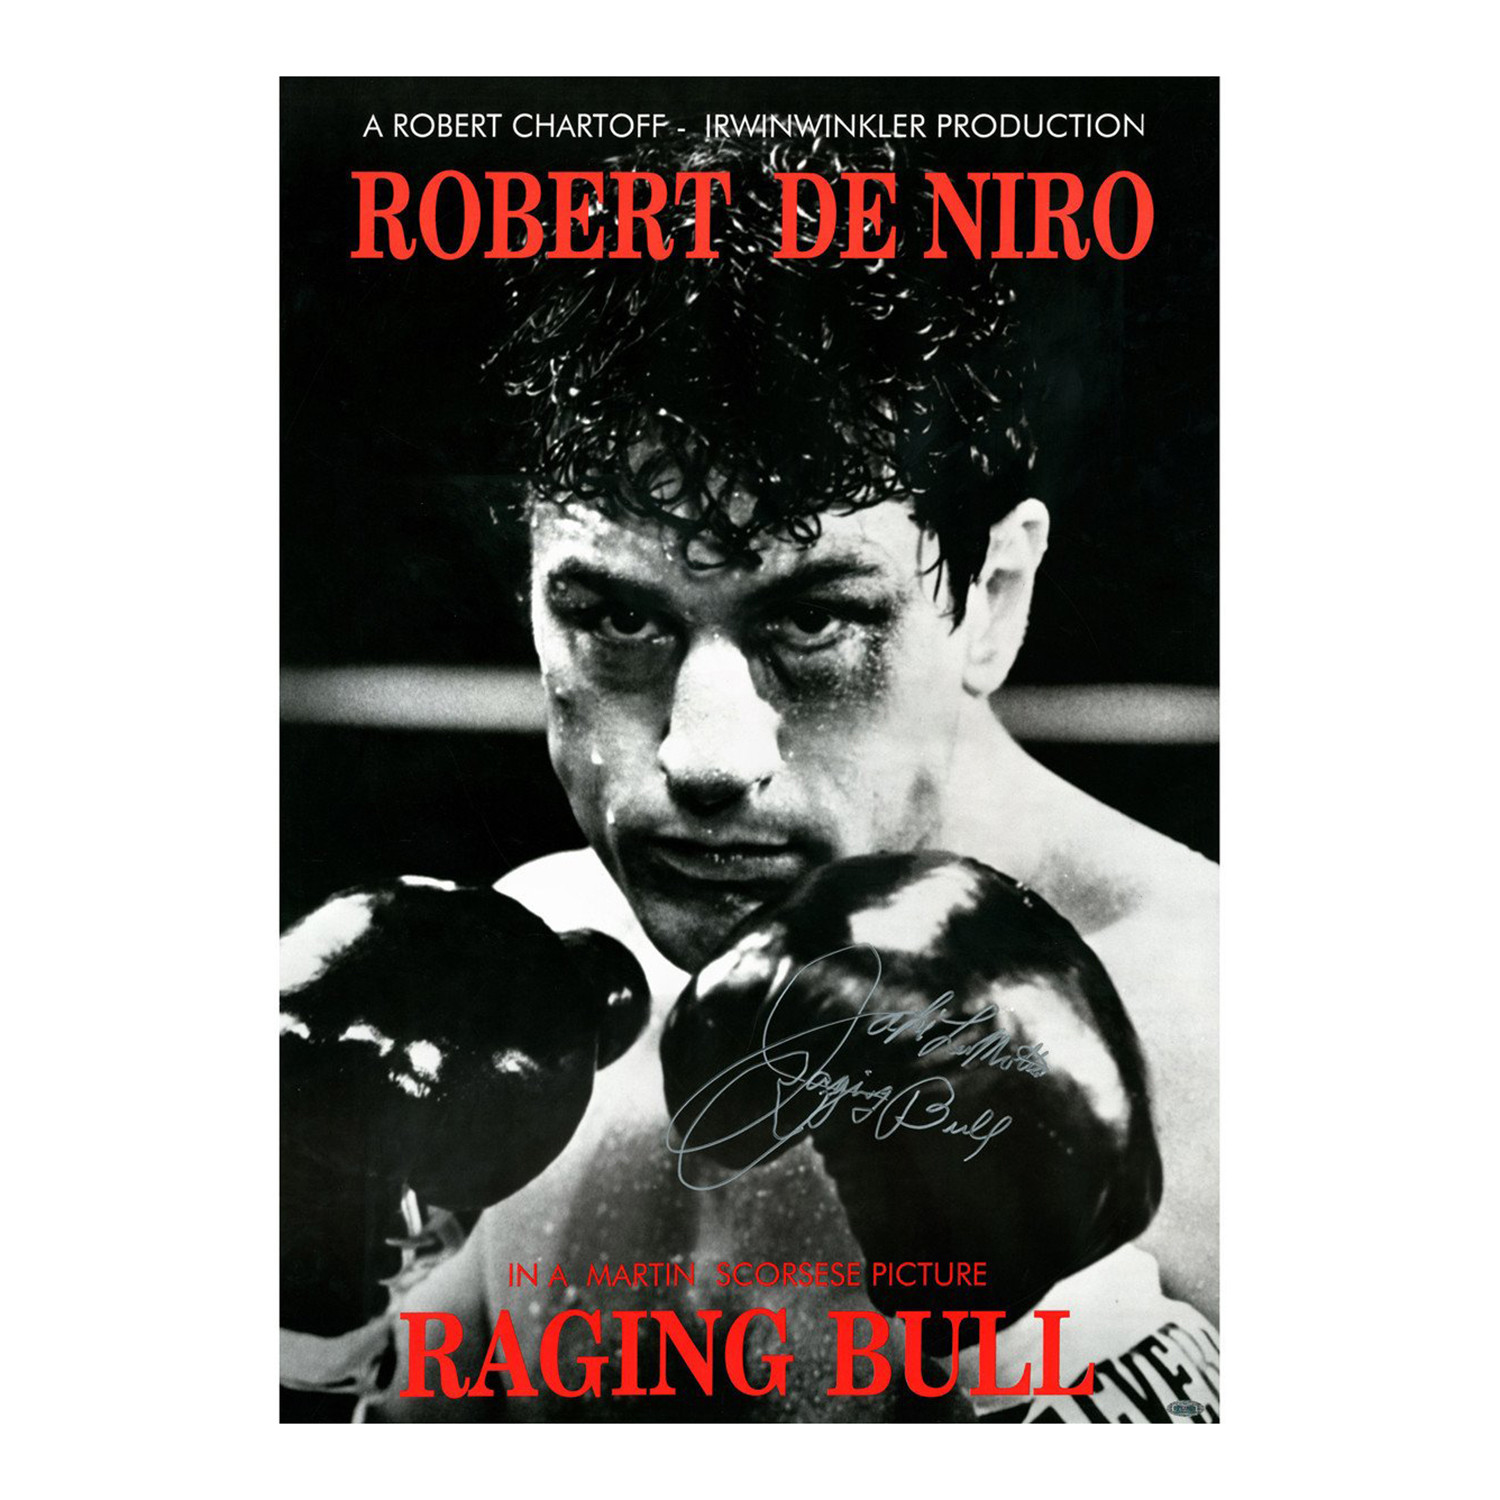 RAGING BULL Movie Poster Boxing Fighter Reobert De Niro Martin Scorsese  